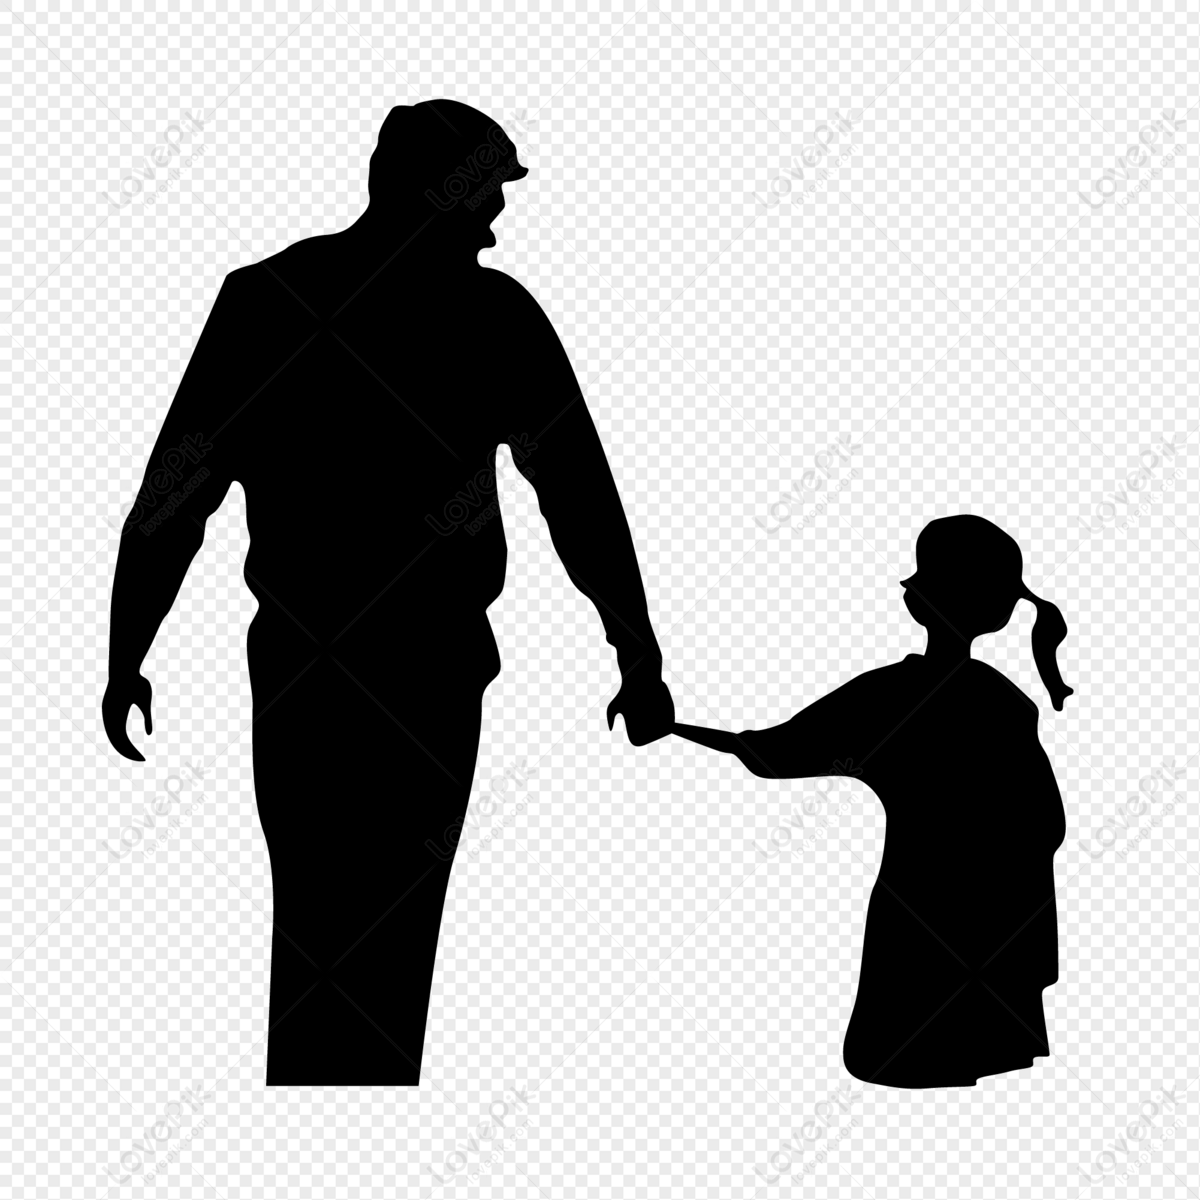 Hãy cùng đắm chìm trong cảm giác hạnh phúc của bố và con gái khi nắm tay nhau. Vô vàn niềm yêu thương, sự dịu êm và an toàn được truyền tải qua từng động tác nhỏ. Bức ảnh sẽ khiến bạn nhớ đến tình cảm gia đình và muốn ôm chặt con trên tay của mình hơn bao giờ hết.